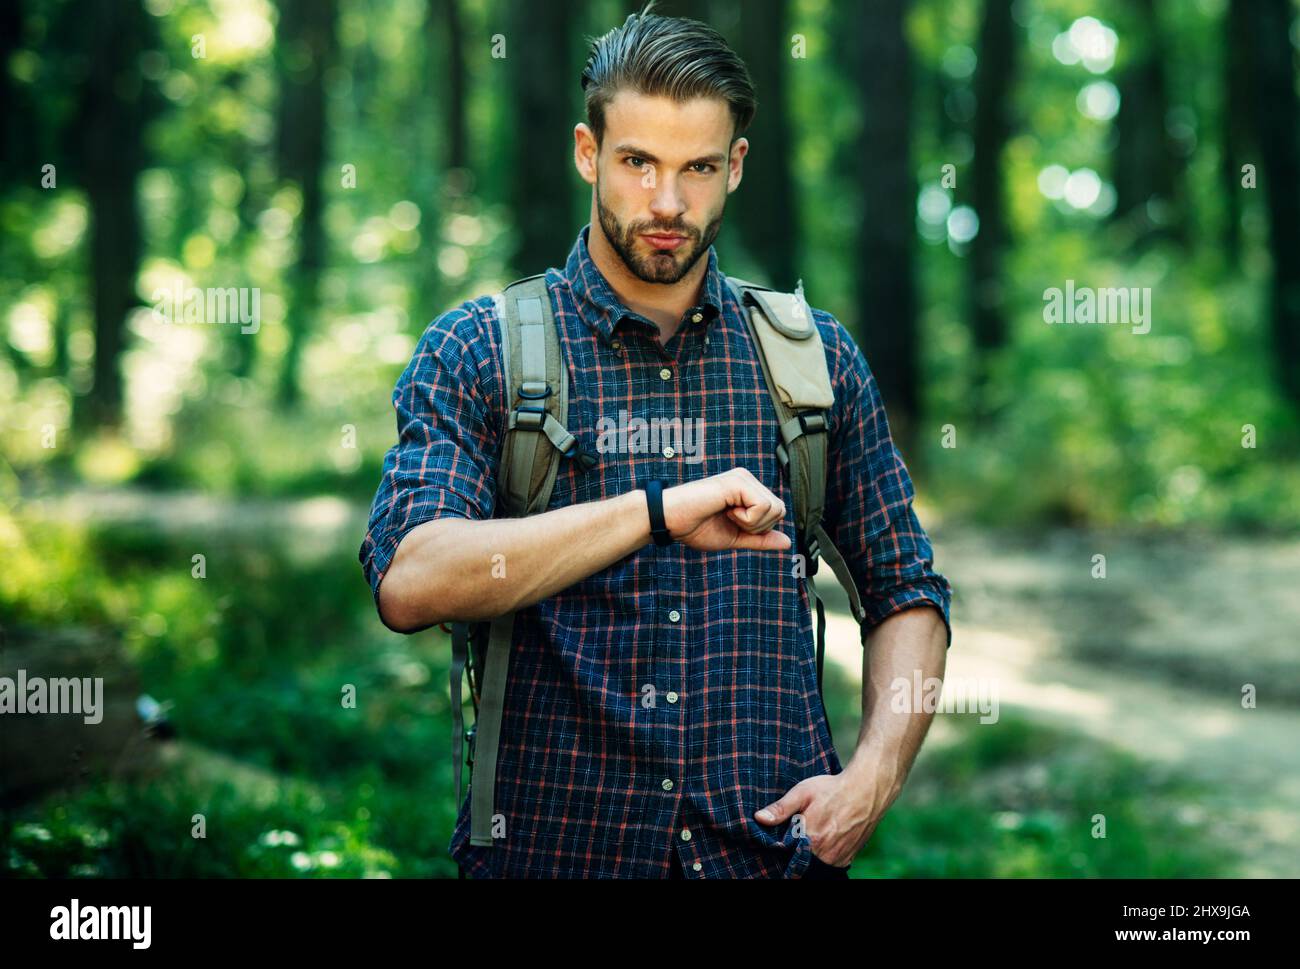 Ein hübscher bärtiger Mann mit Rucksack im karierten Hemd sieht beim Spaziergang im Wald auf der Uhr aus. Tourismus, Reisen Stockfoto